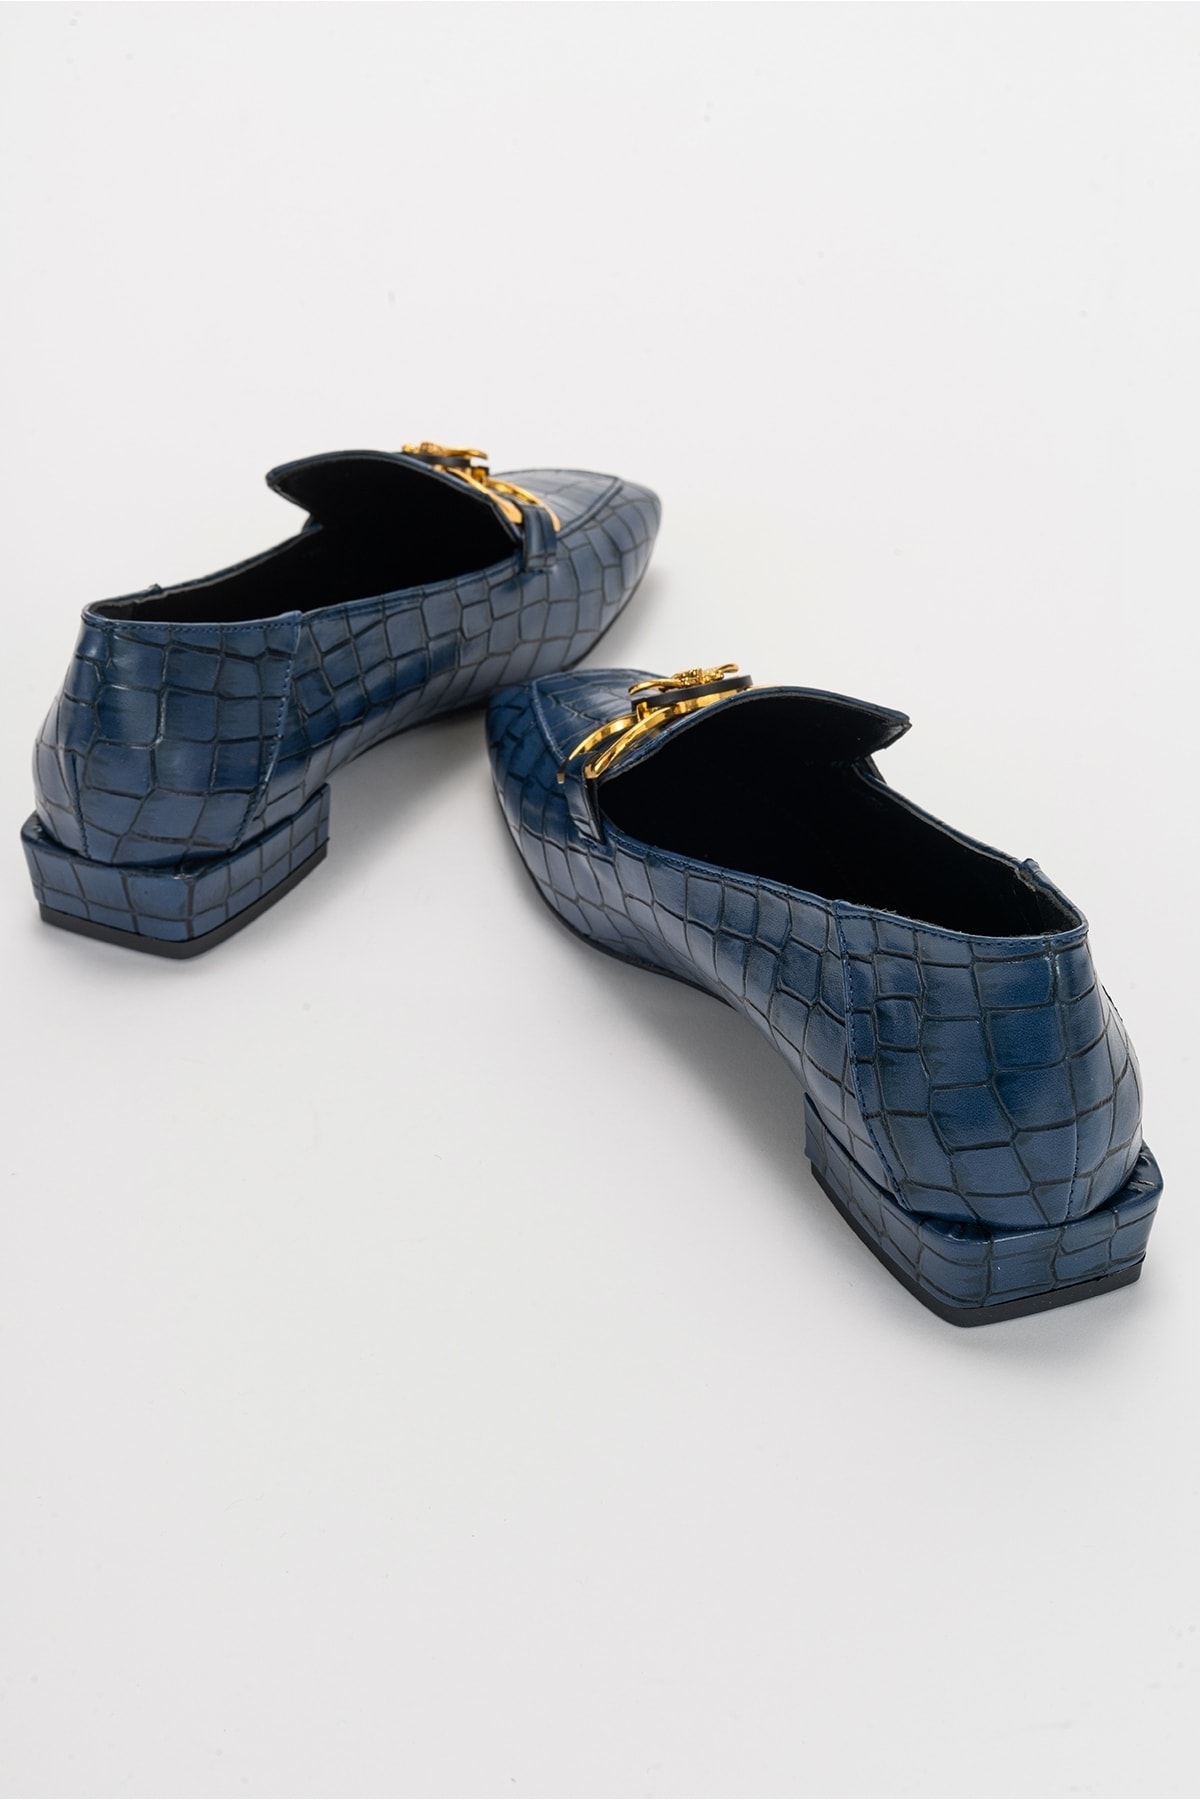 LuviShoes Odor Lacivert Baskı Kadın Loafer Ayakkabı ON8047